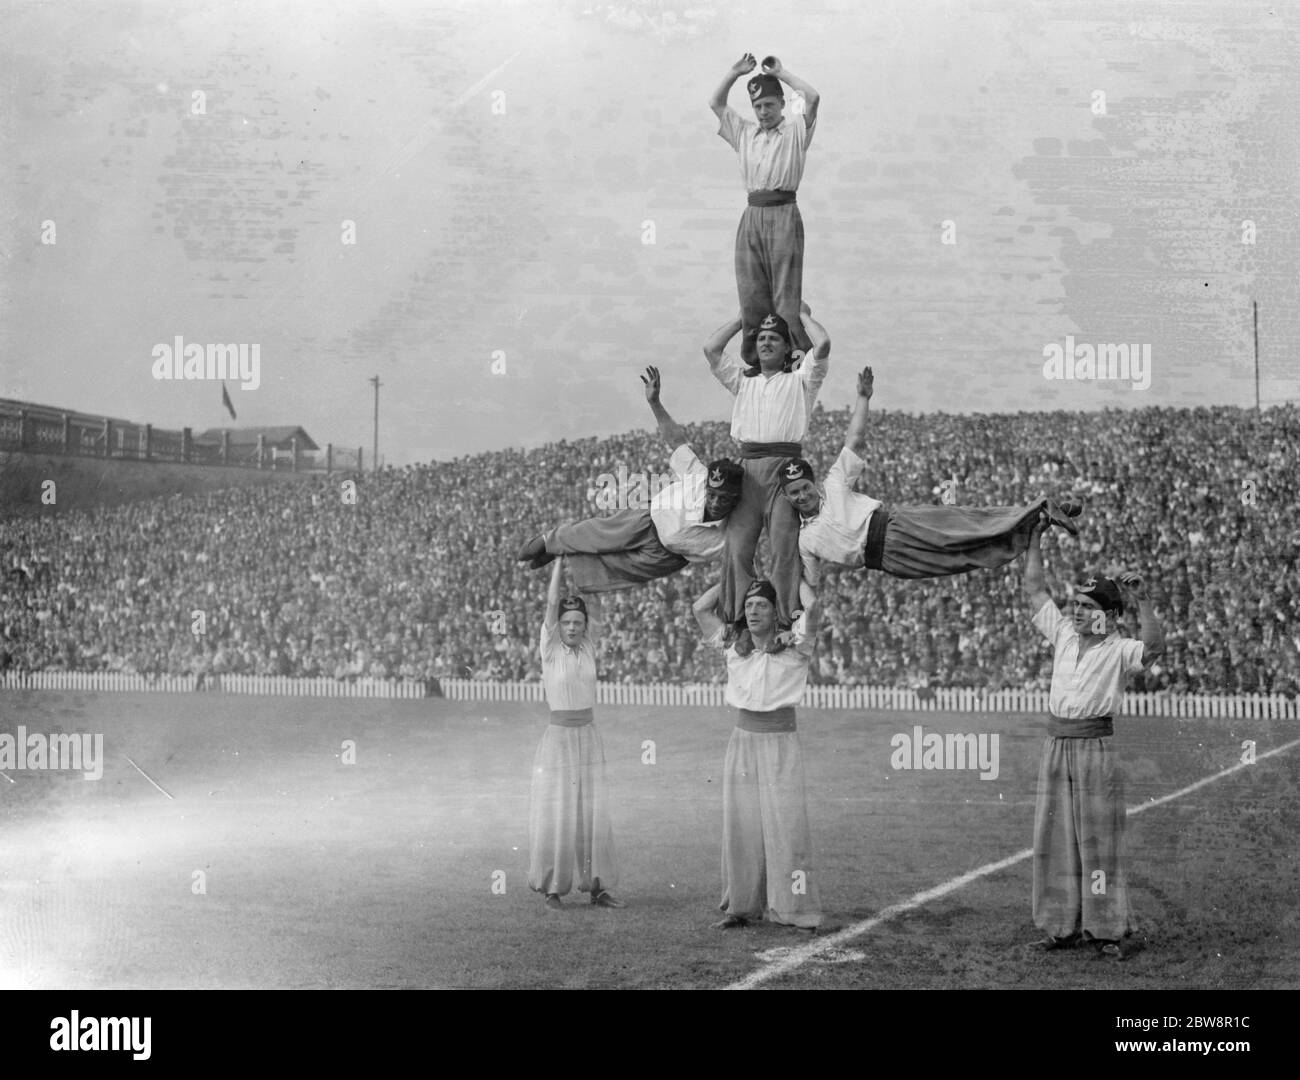 Newport County Association Football Club gegen Millwall Football Club . Halbzeit Unterhaltung durch eine Gruppe von Akrobaten in einer menschlichen Pyramide. 1936 Stockfoto